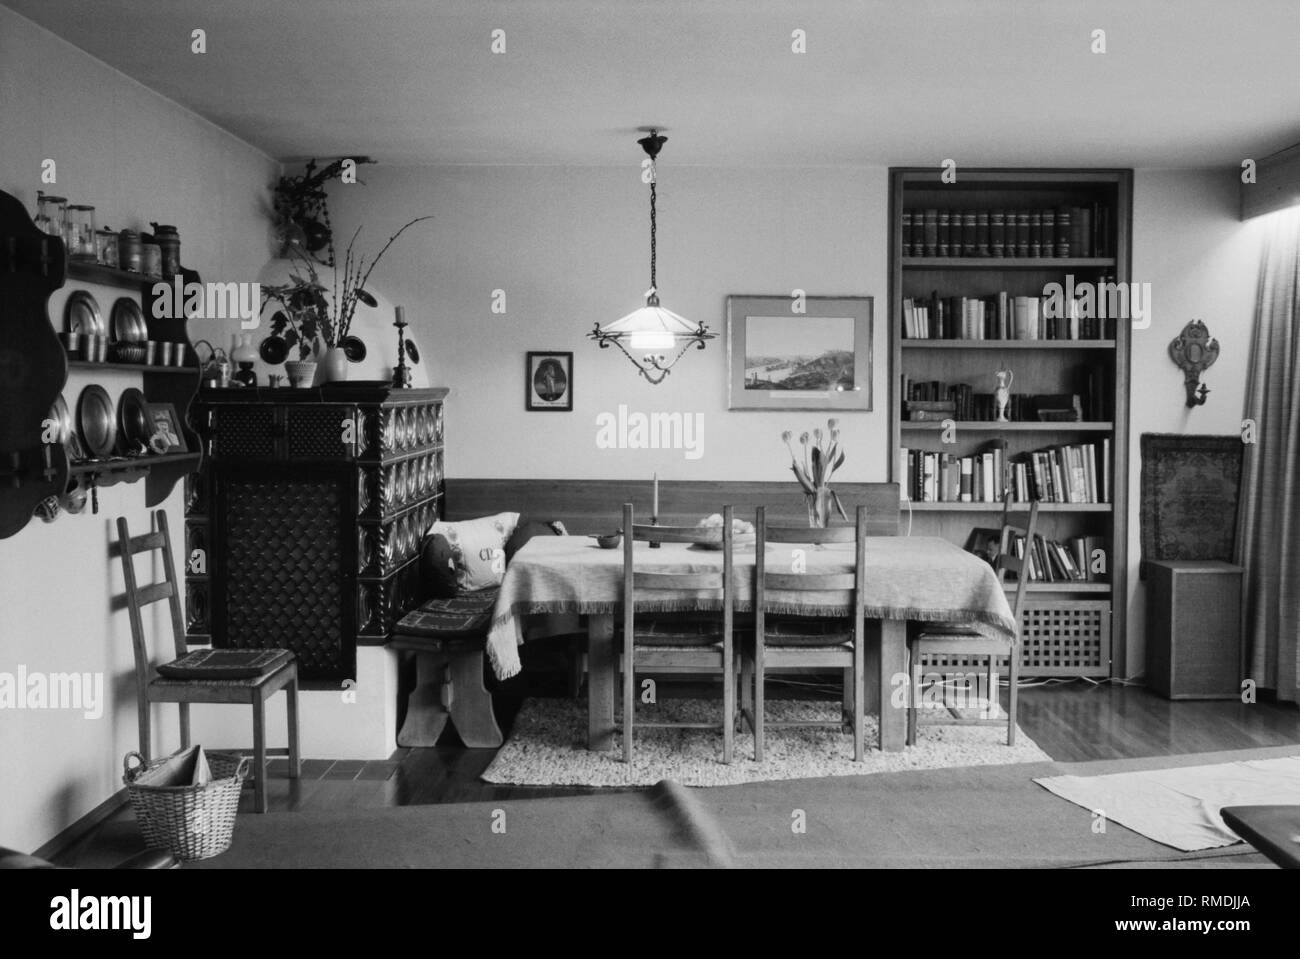 Innenausbau einer Wohnung in Murnau mit einem Kachelofen, Esstisch, Bücherregal, Bilder, etc. Stockfoto